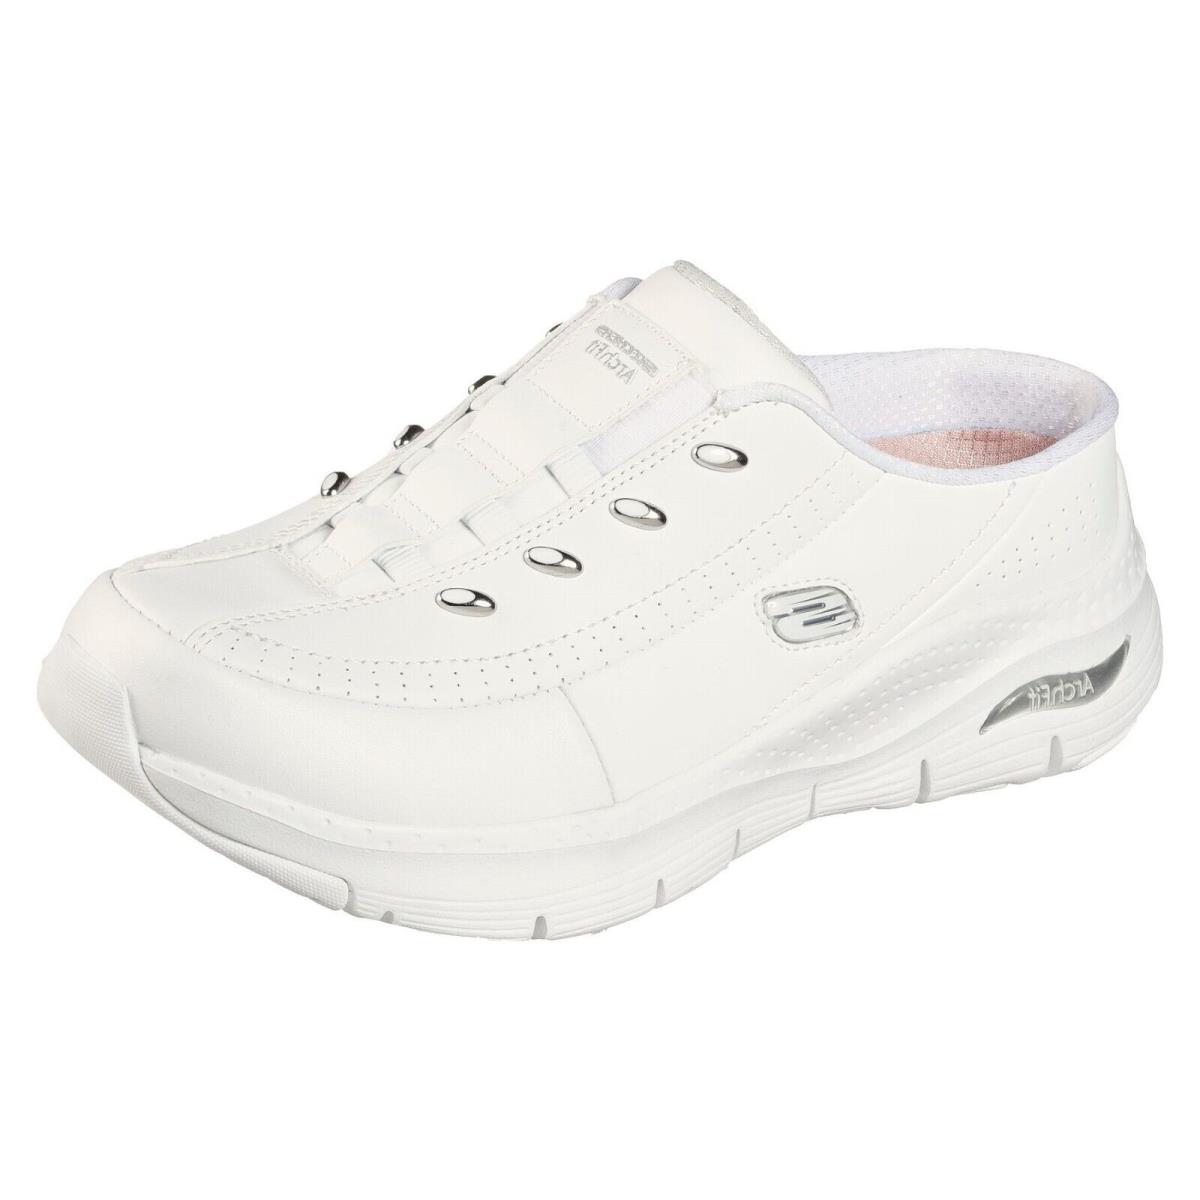 Skechers D`lites Women`s Comfort Slip-on Shoes Mule Memory Foam Sport Sneakers Blessful Me/White/Silver